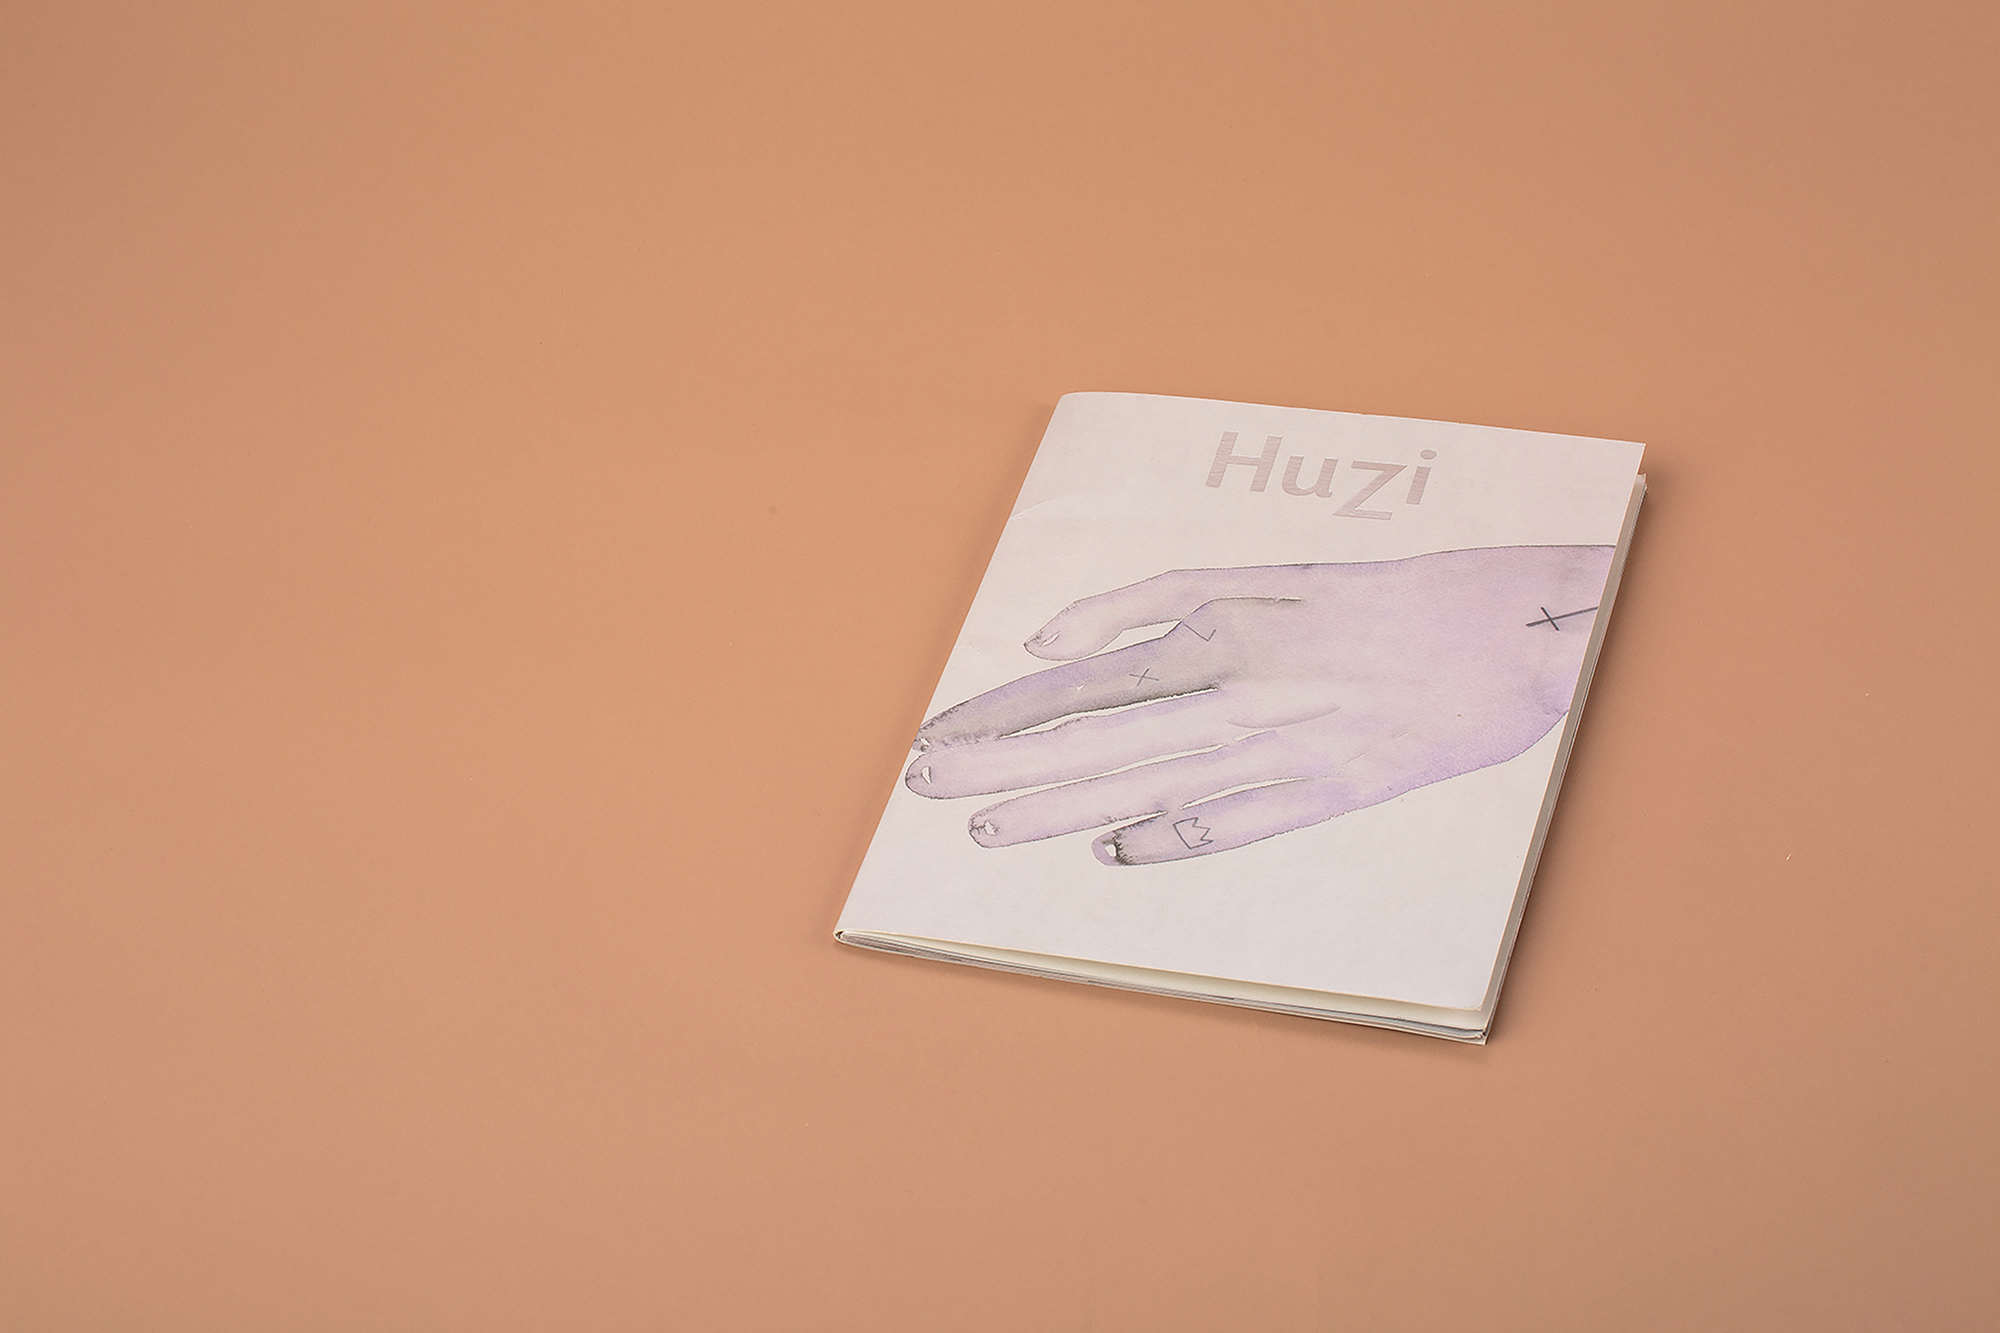 HuZi, Lover,2018